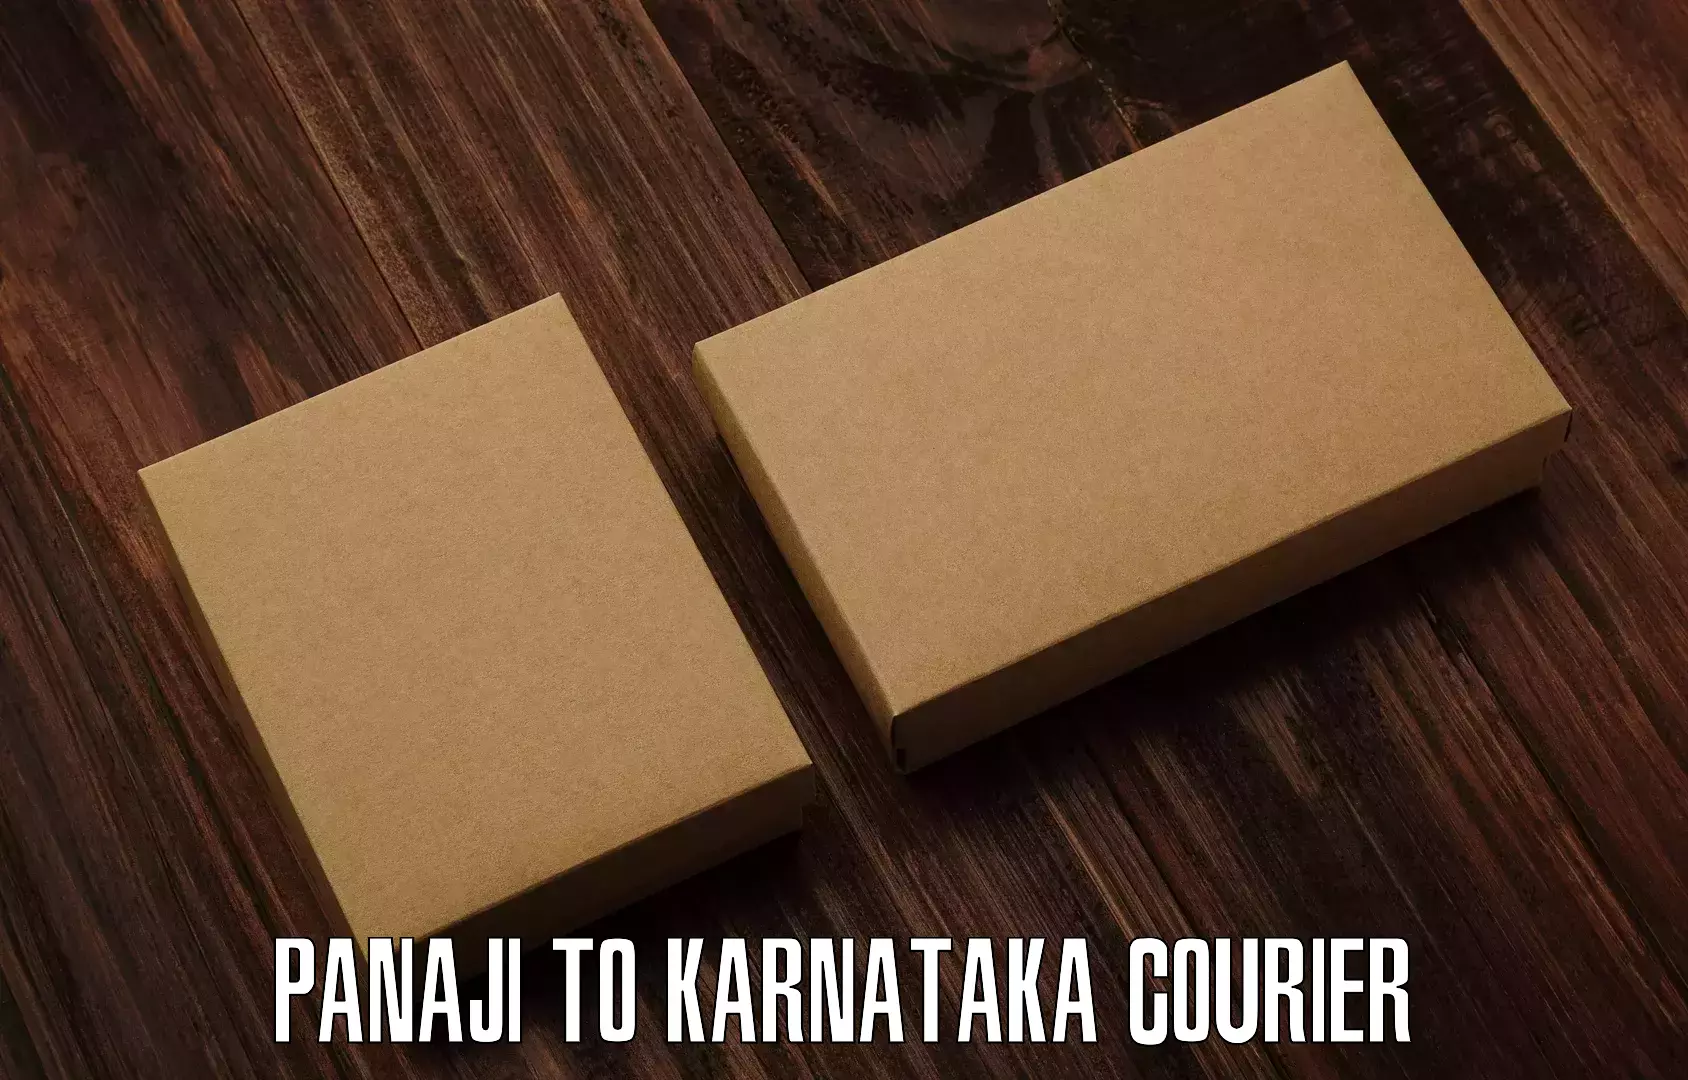 Tech-enabled shipping in Panaji to Kanakapura